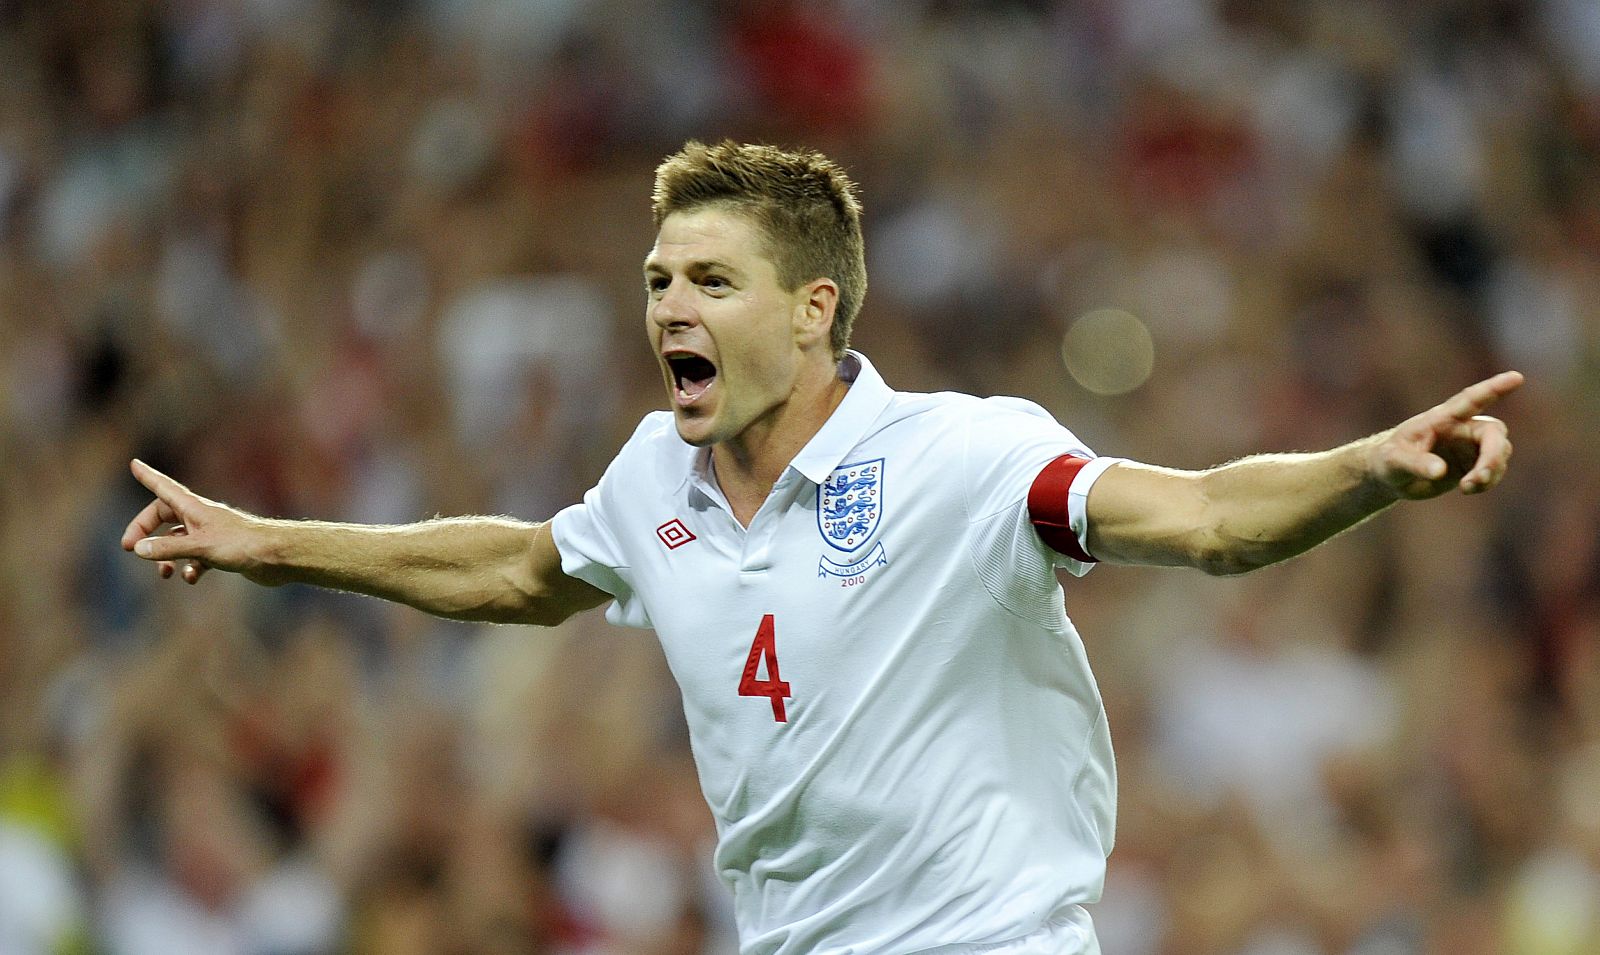 El jugador británico Steven Gerrard celebra tras anotar ante su similar de Hungría.